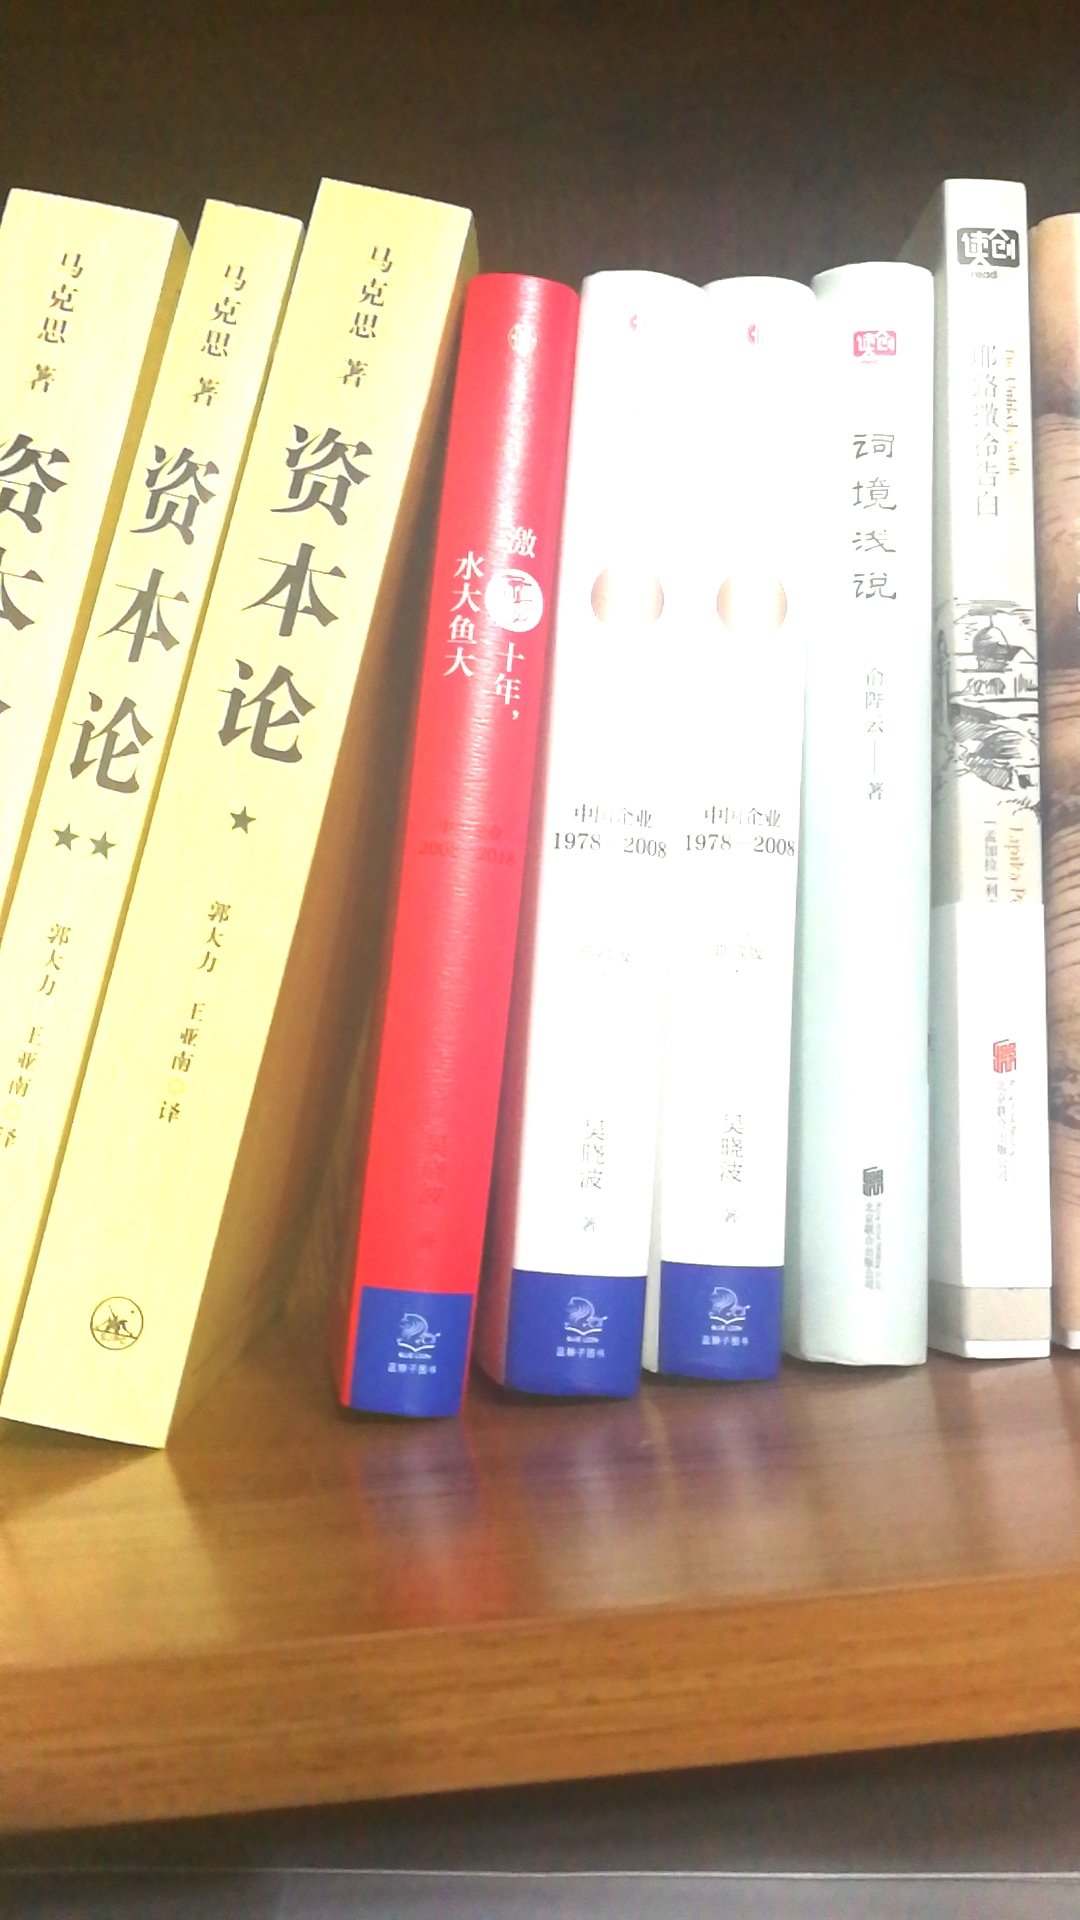 读了一篇关于吴晓波的文章，觉得不错，有性格的接地气，有独到简介，所以就买了，深入了解一下，书不错。